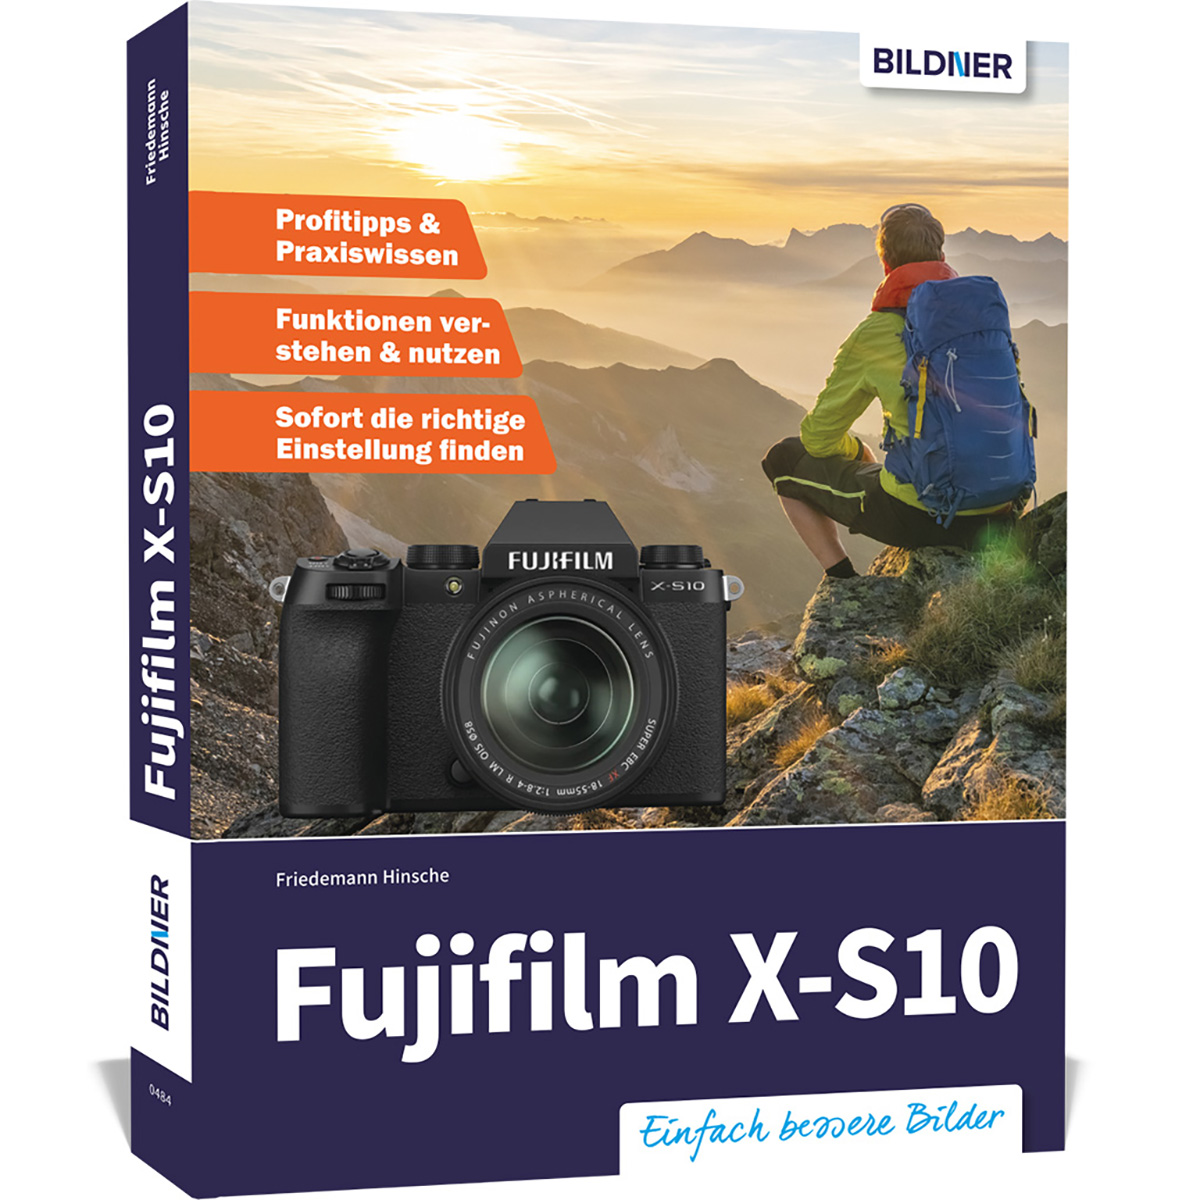 Fujifilm X-S10 - umfangreiche Praxisbuch zu Das Kamera! Ihrer